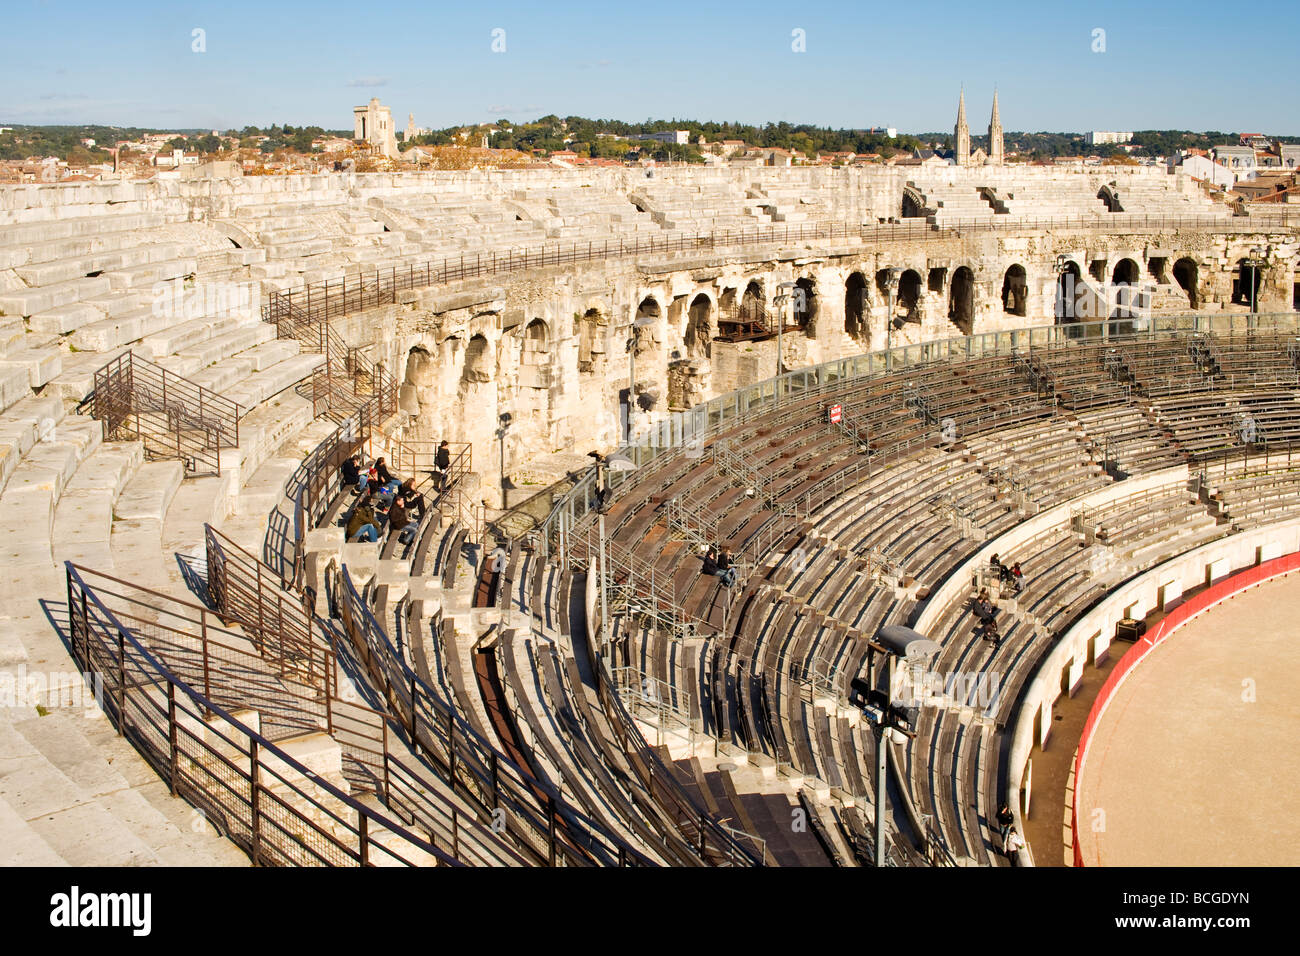 Innere des Les Arènes de Nîmes, ein römisches Amphitheater in der Stadt Nimes in Südfrankreich.  Jetzt für Stierkämpfe genutzt. Stockfoto